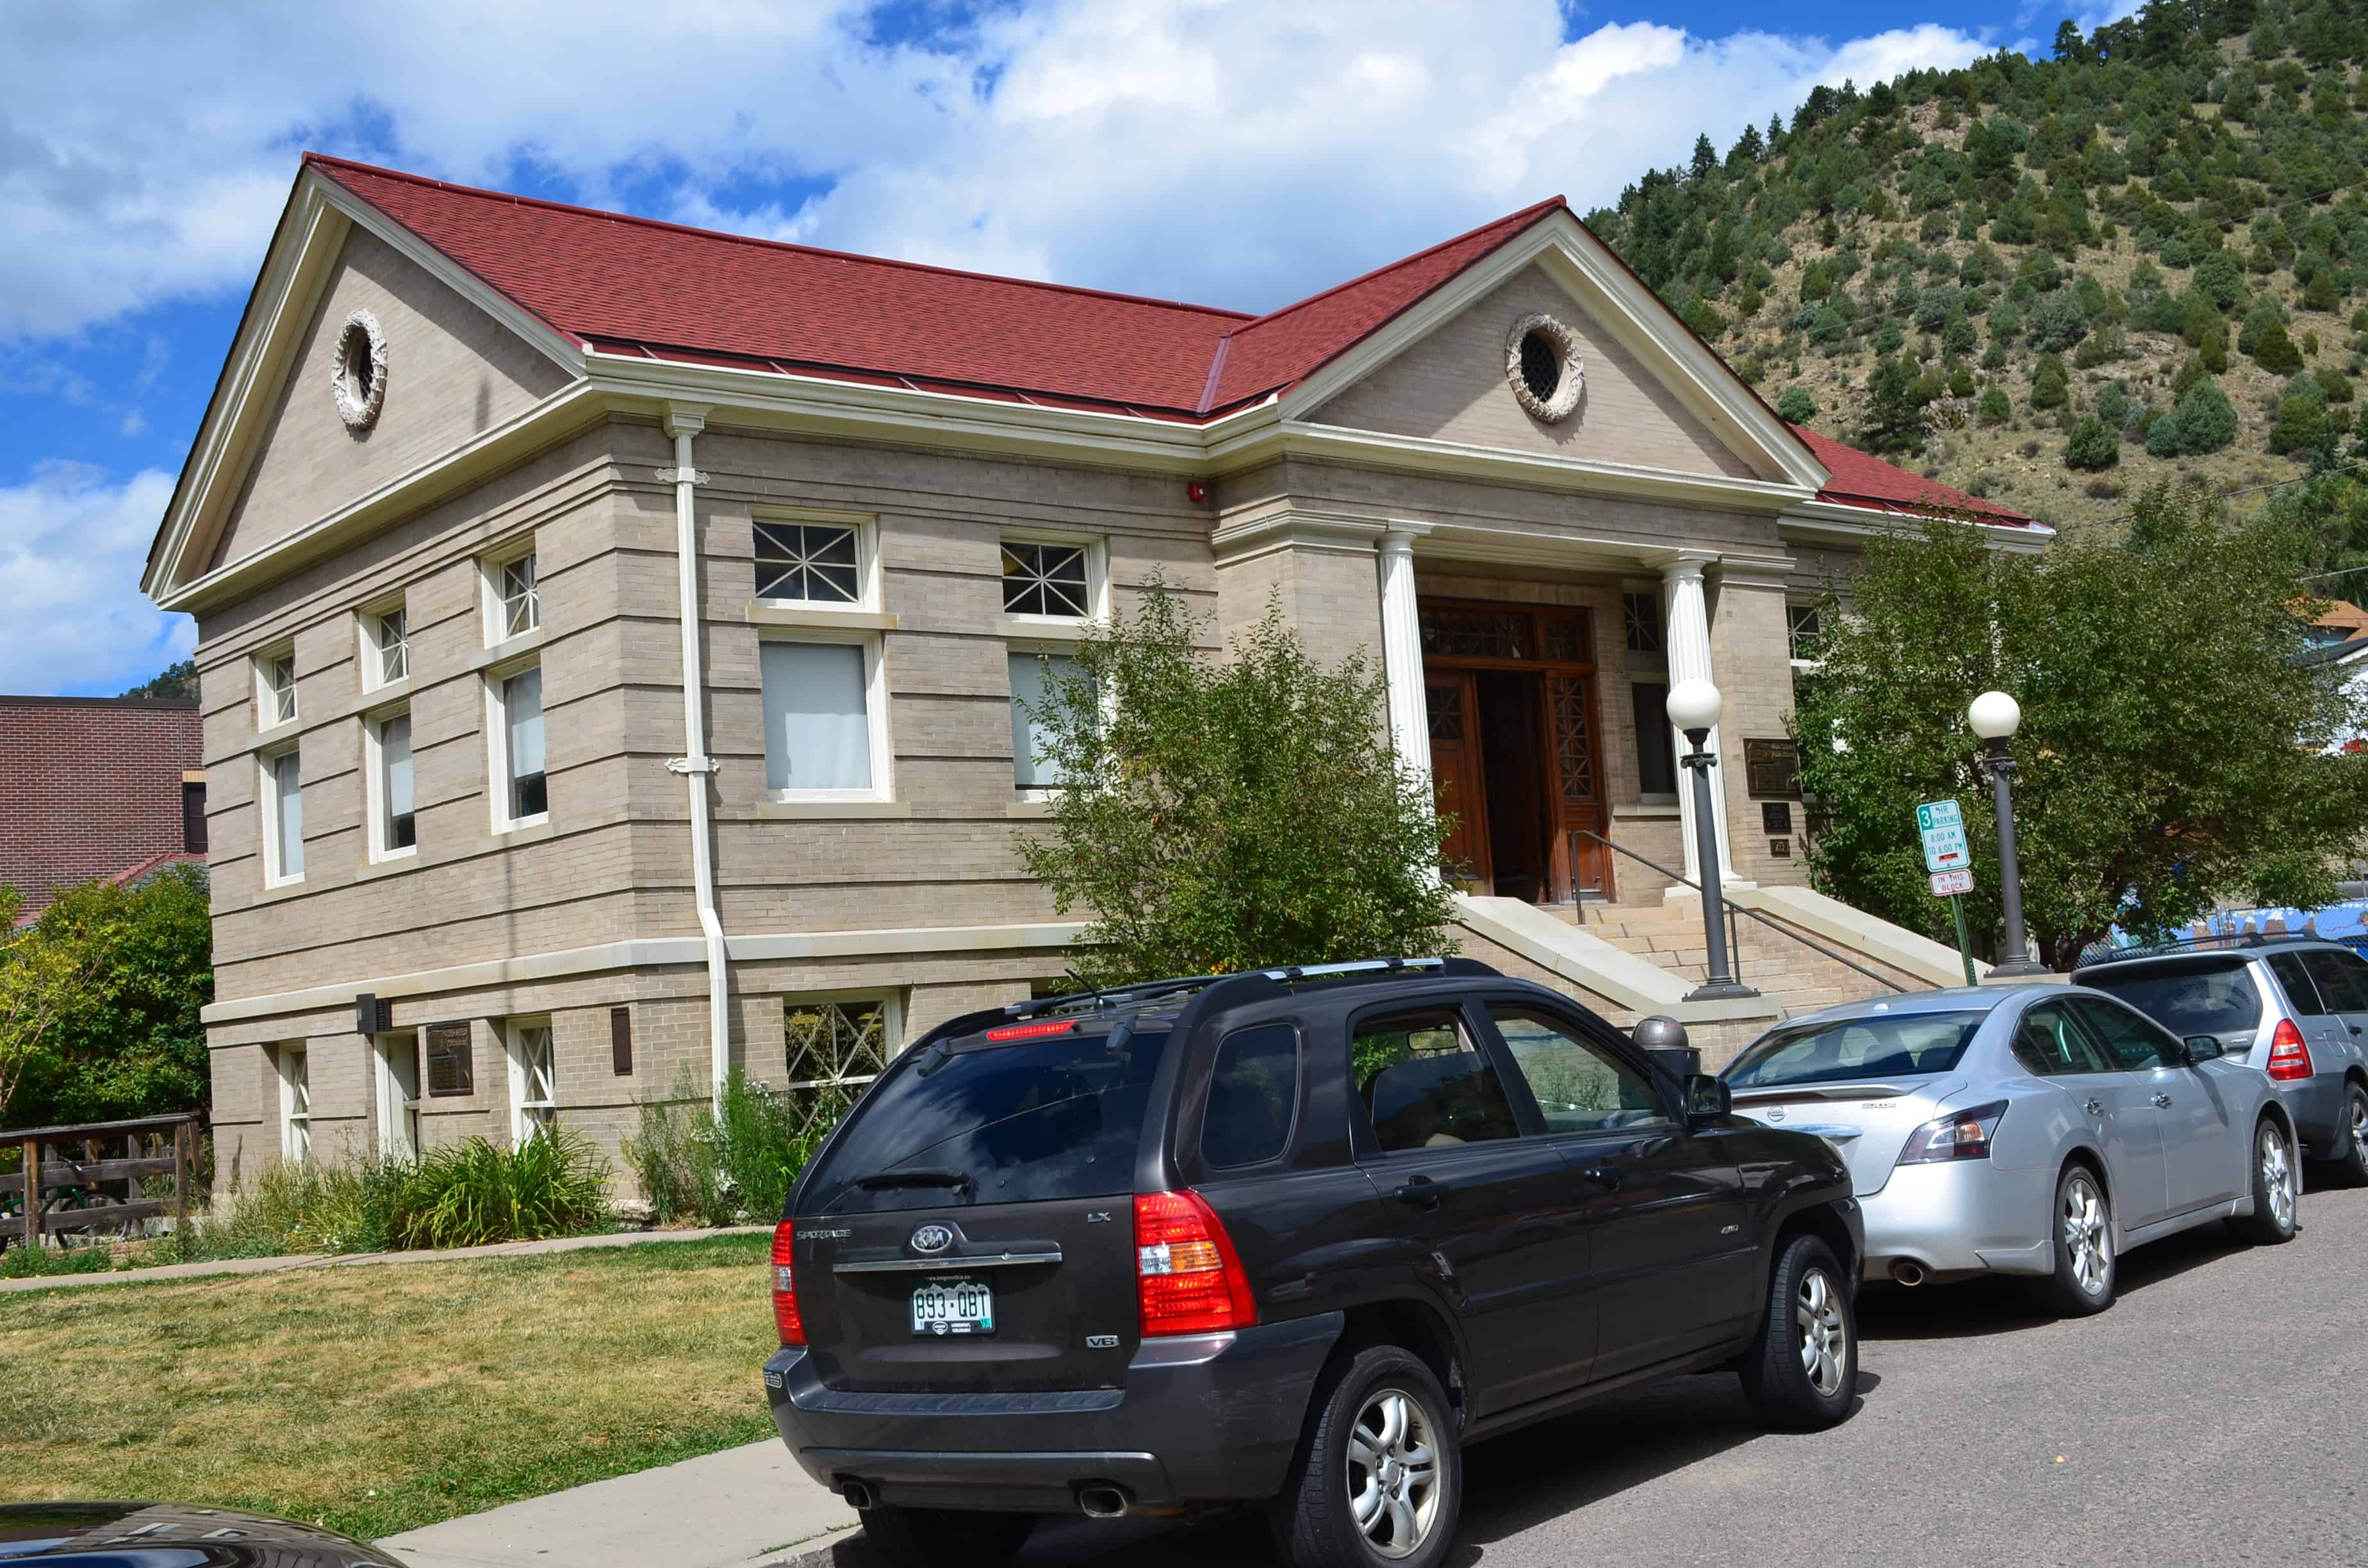 Carnegie Library in Idaho Springs, Colorado